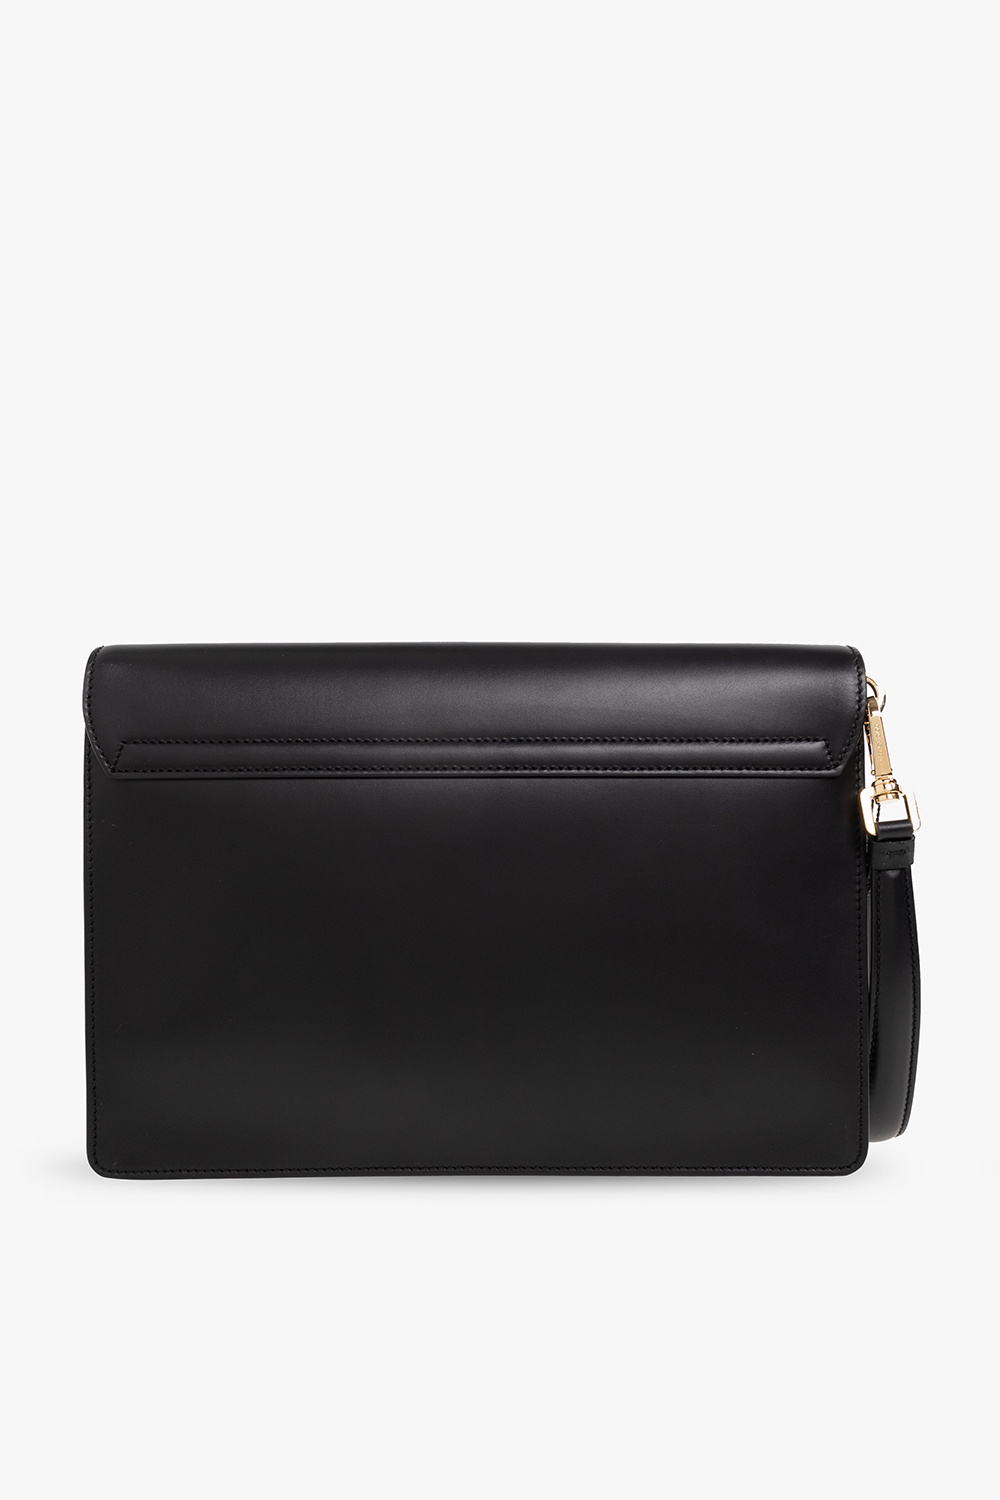 Dolce & Gabbana ‘Monreale’ handbag